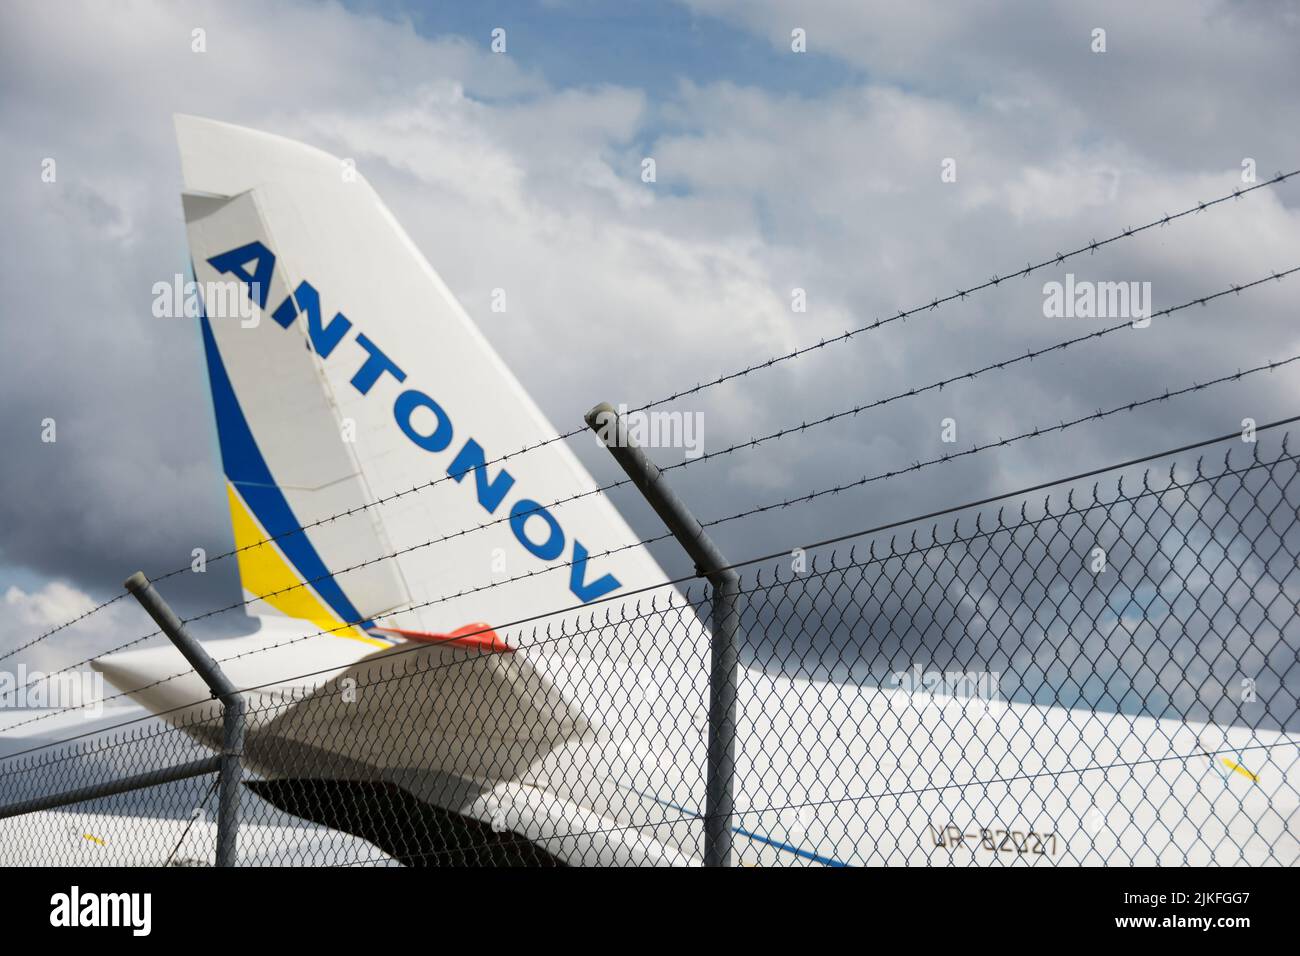 Alemania, 2 de agosto de 2022: Ucraniano Antonov 124 en el aeropuerto de Leipzig Foto de stock